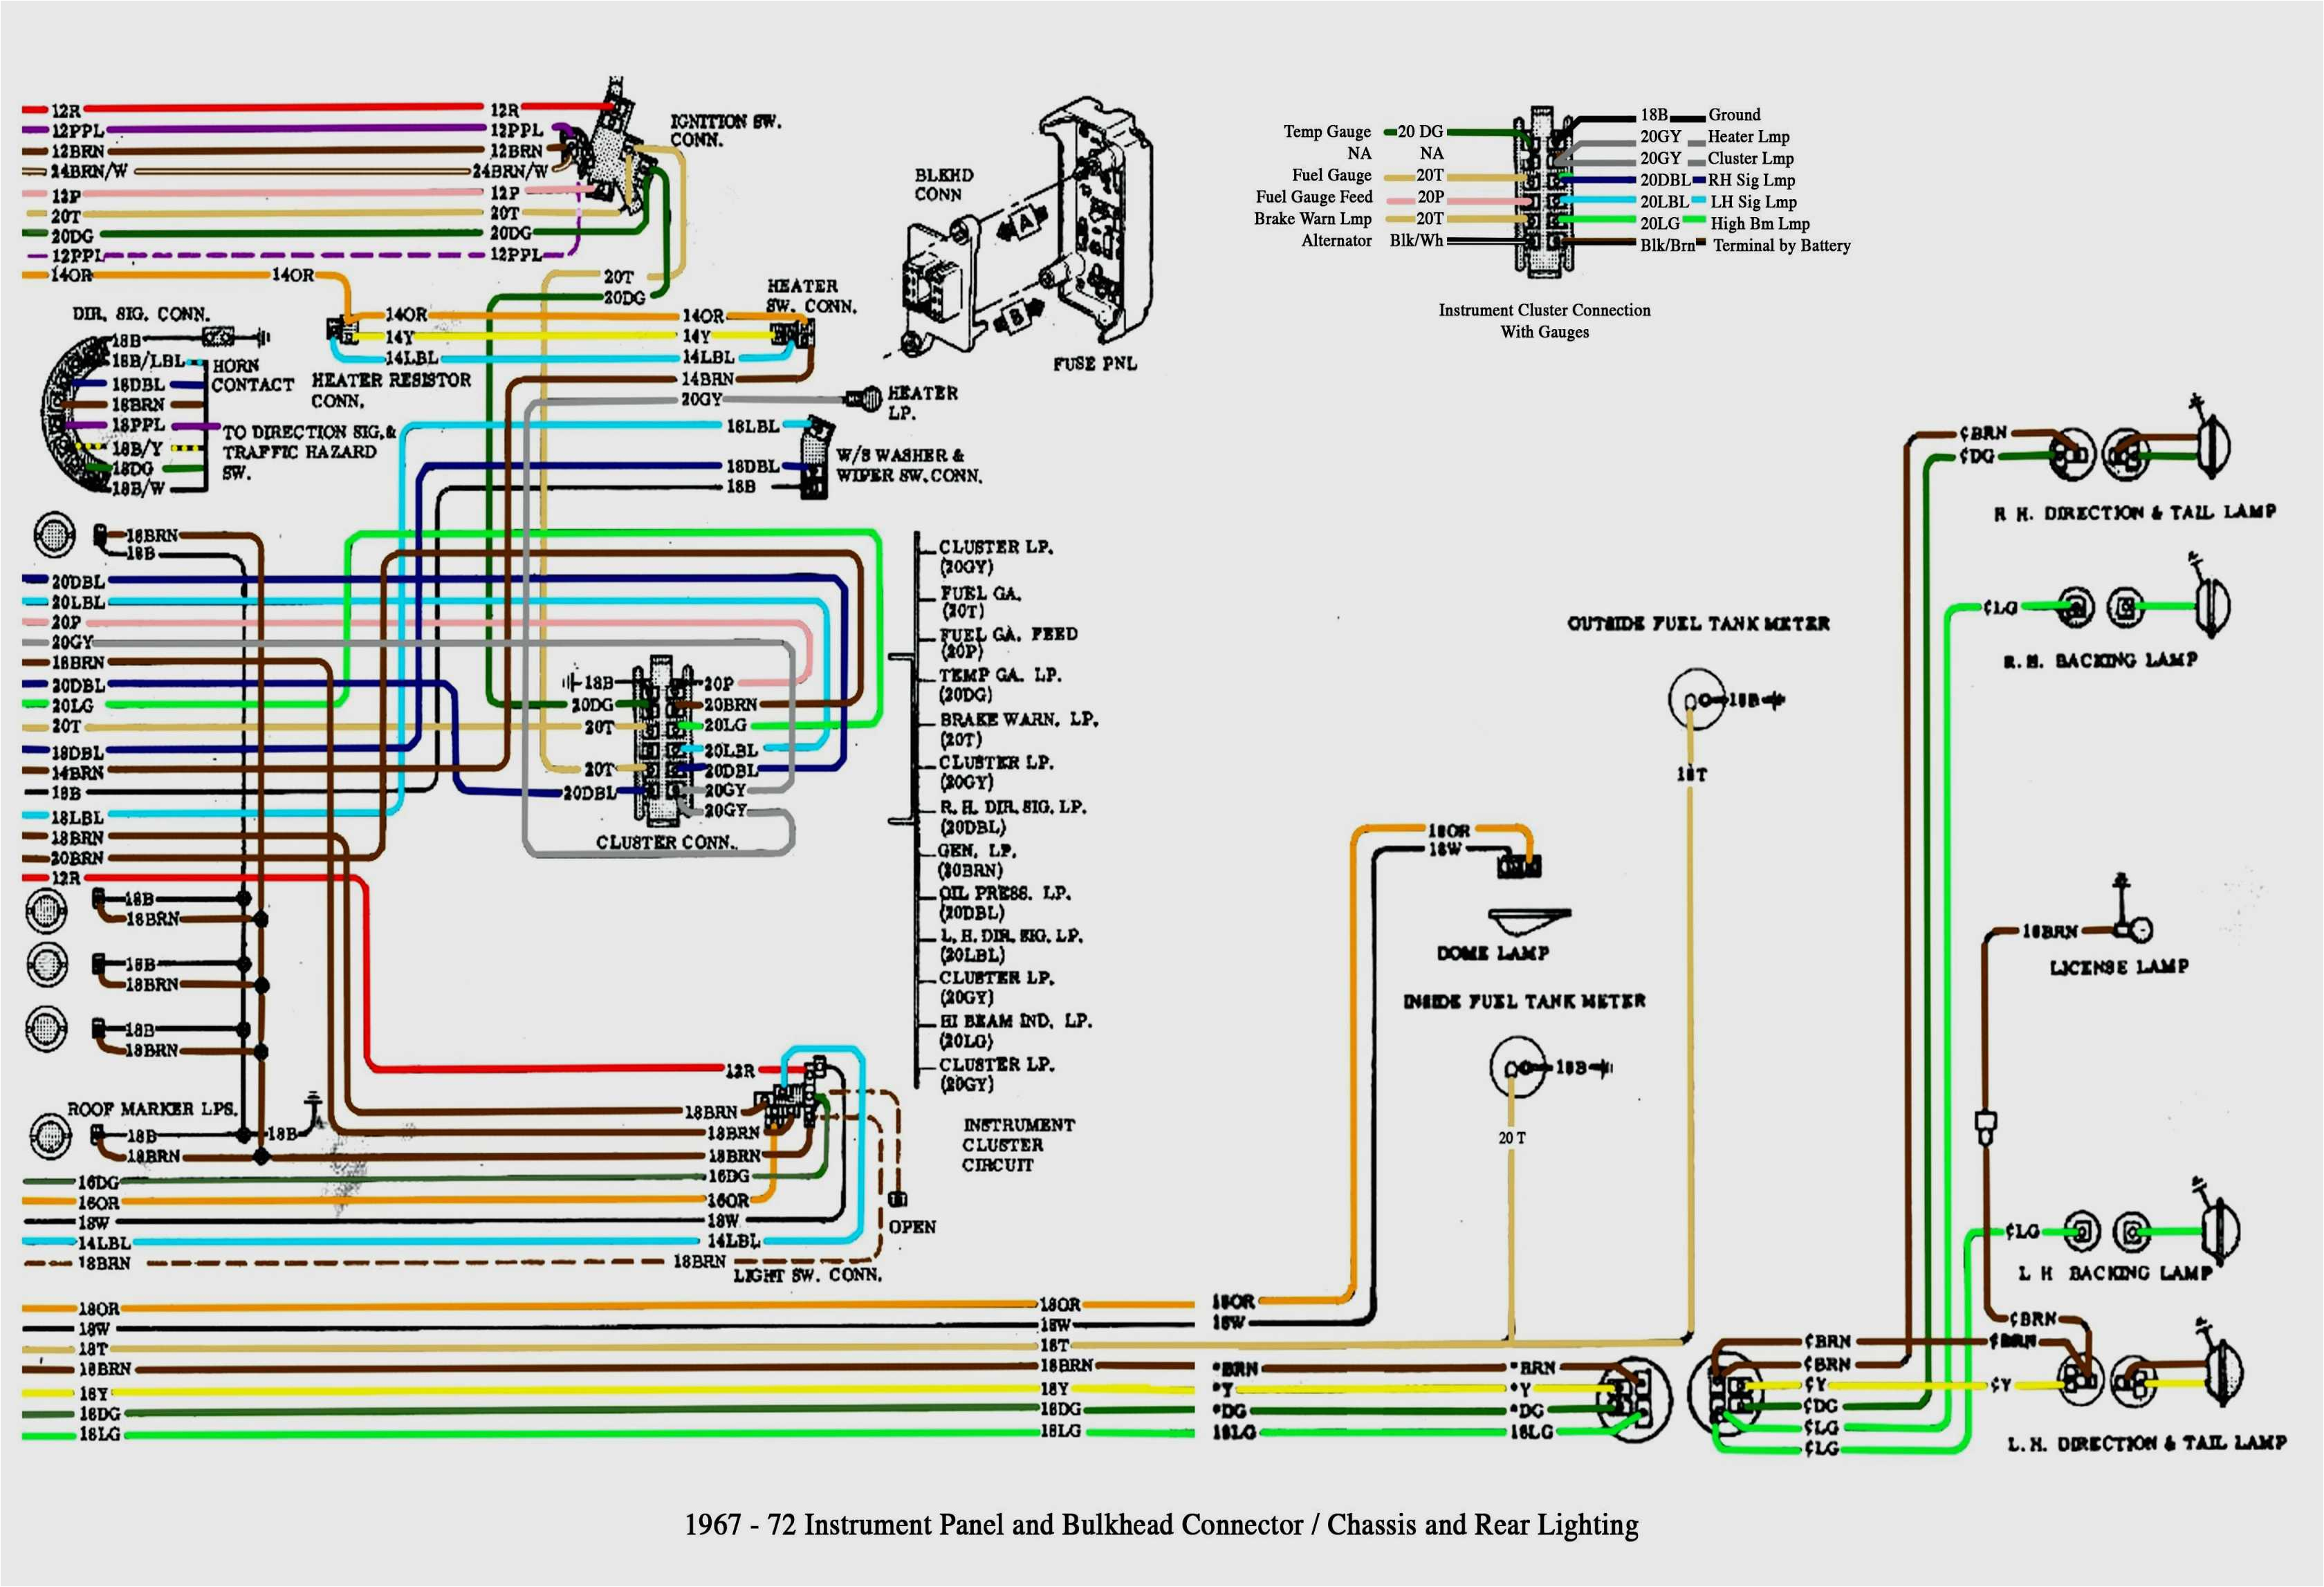 2011 gmc trailer wiring diagram blog wiring diagram 2011 chevy silverado trailer wiring wiring diagram files